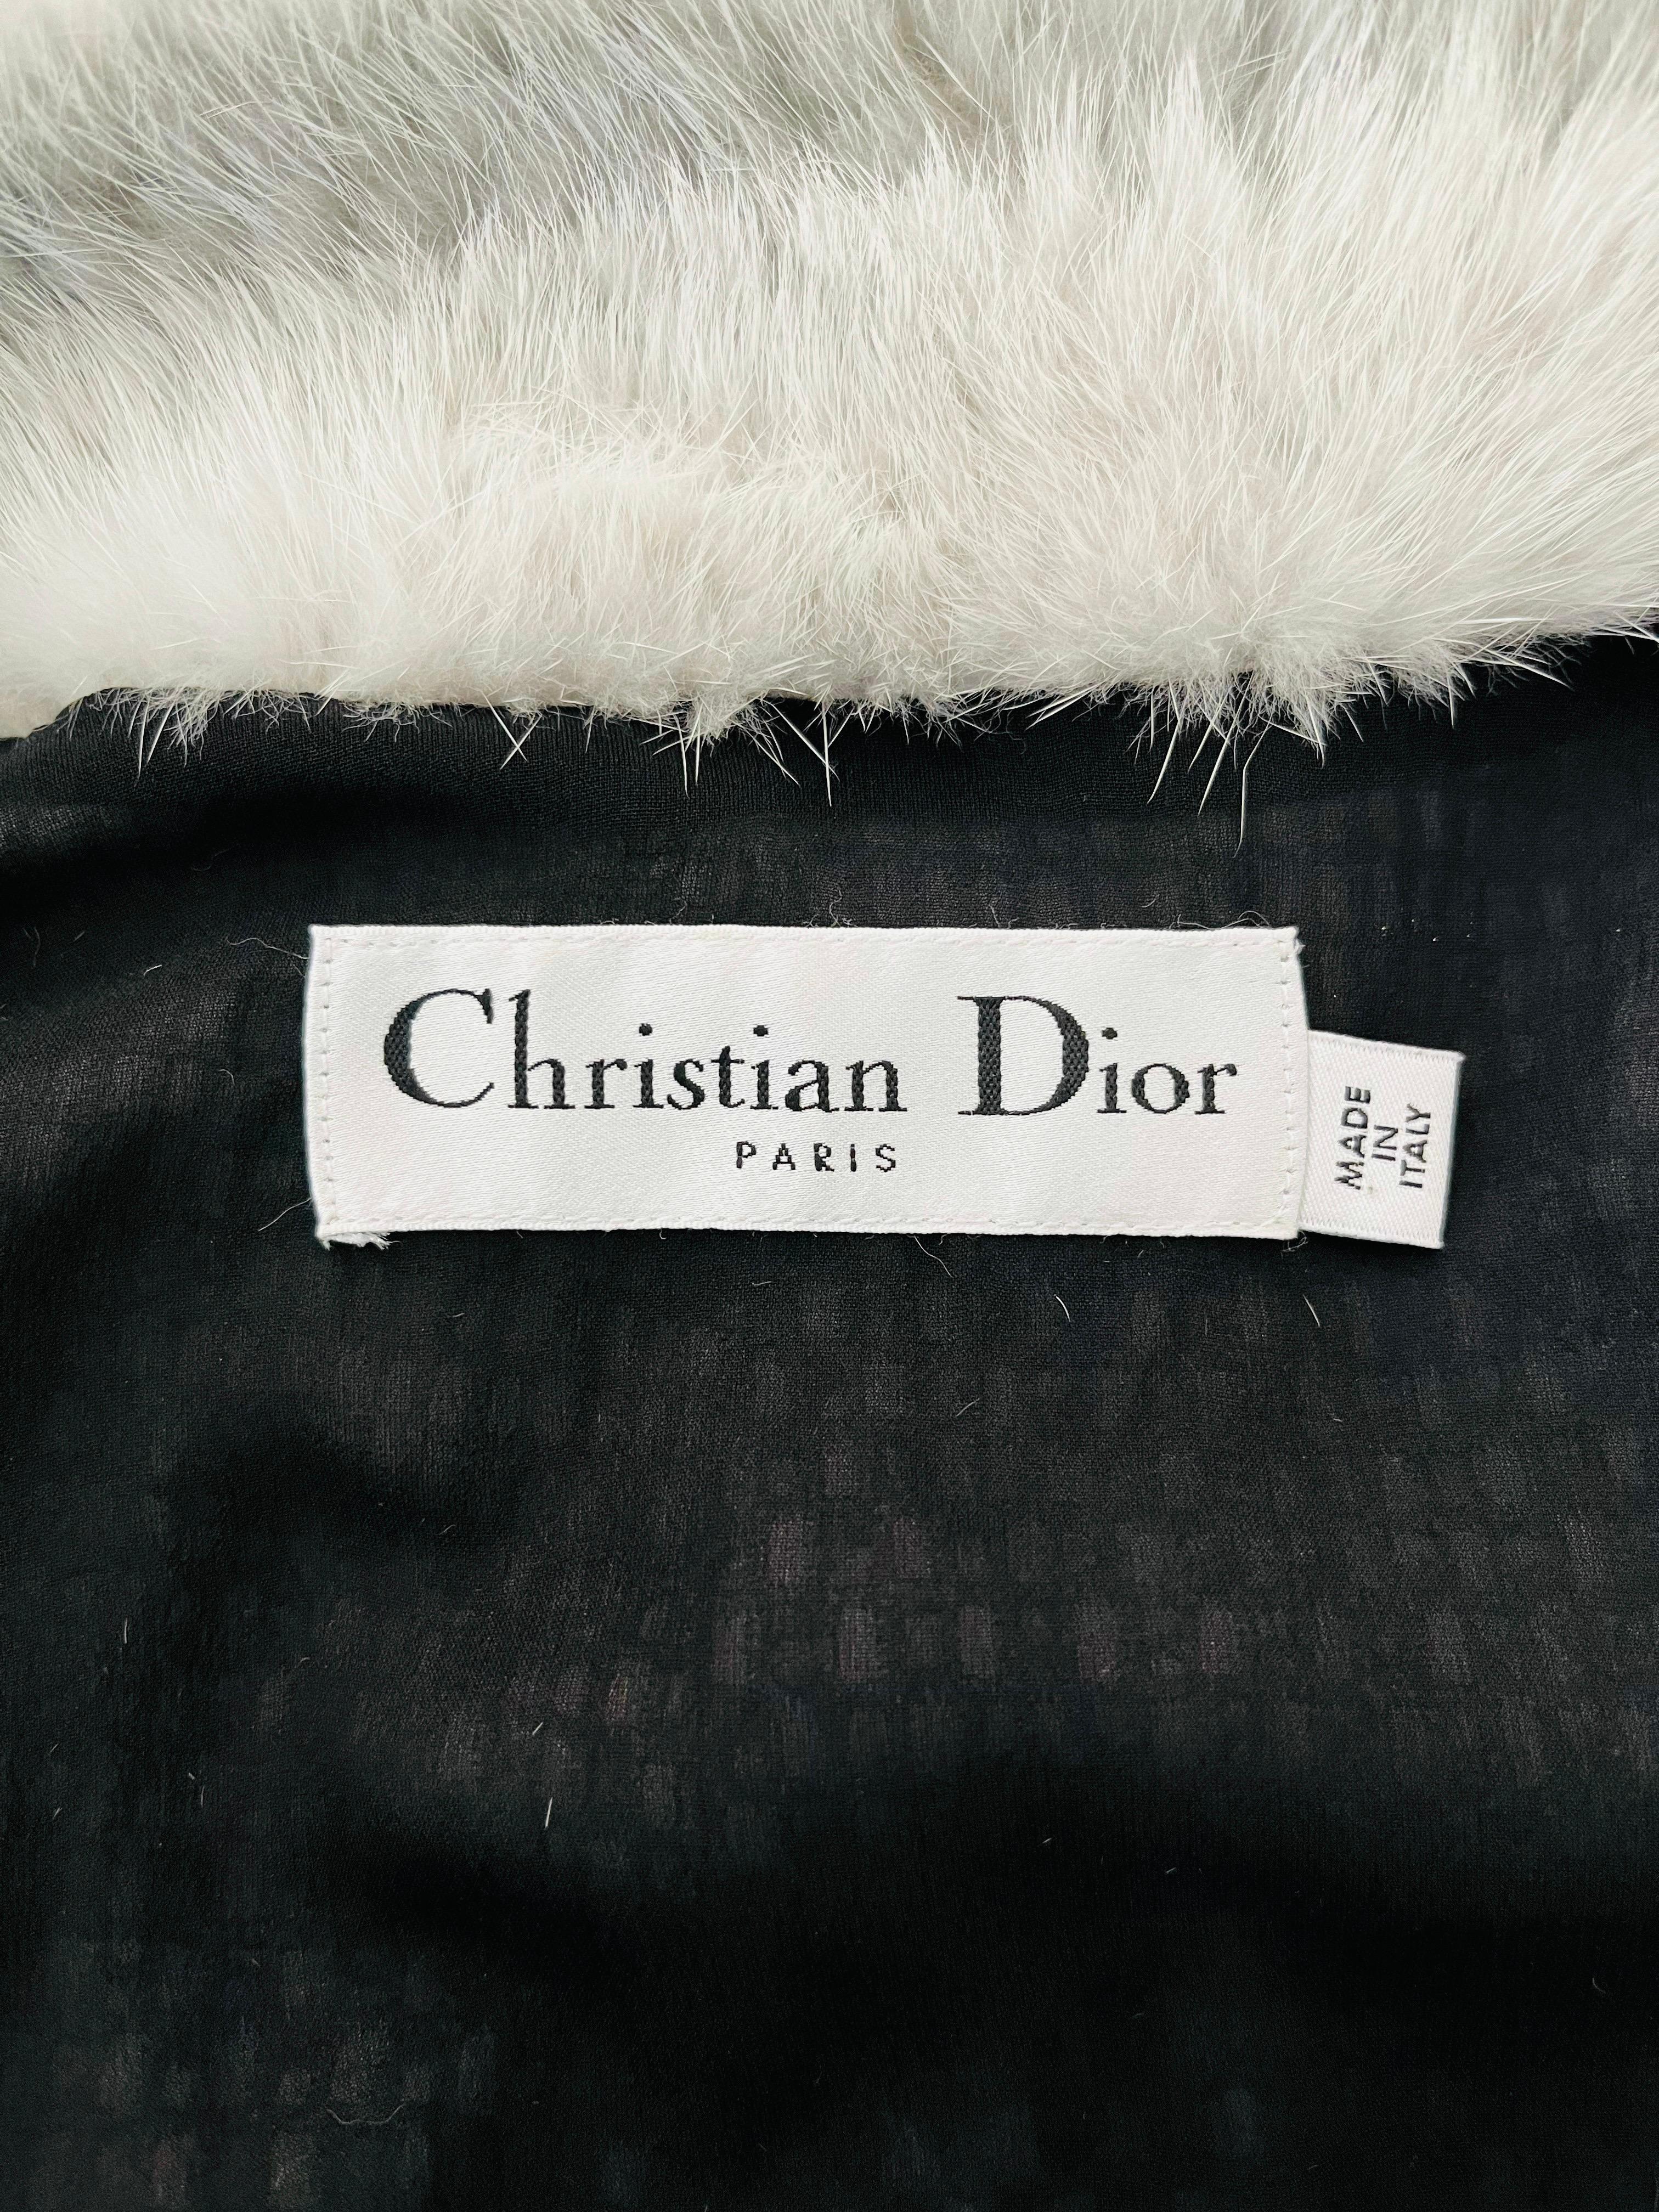 Christian Dior Mink Fur Coat For Sale 1